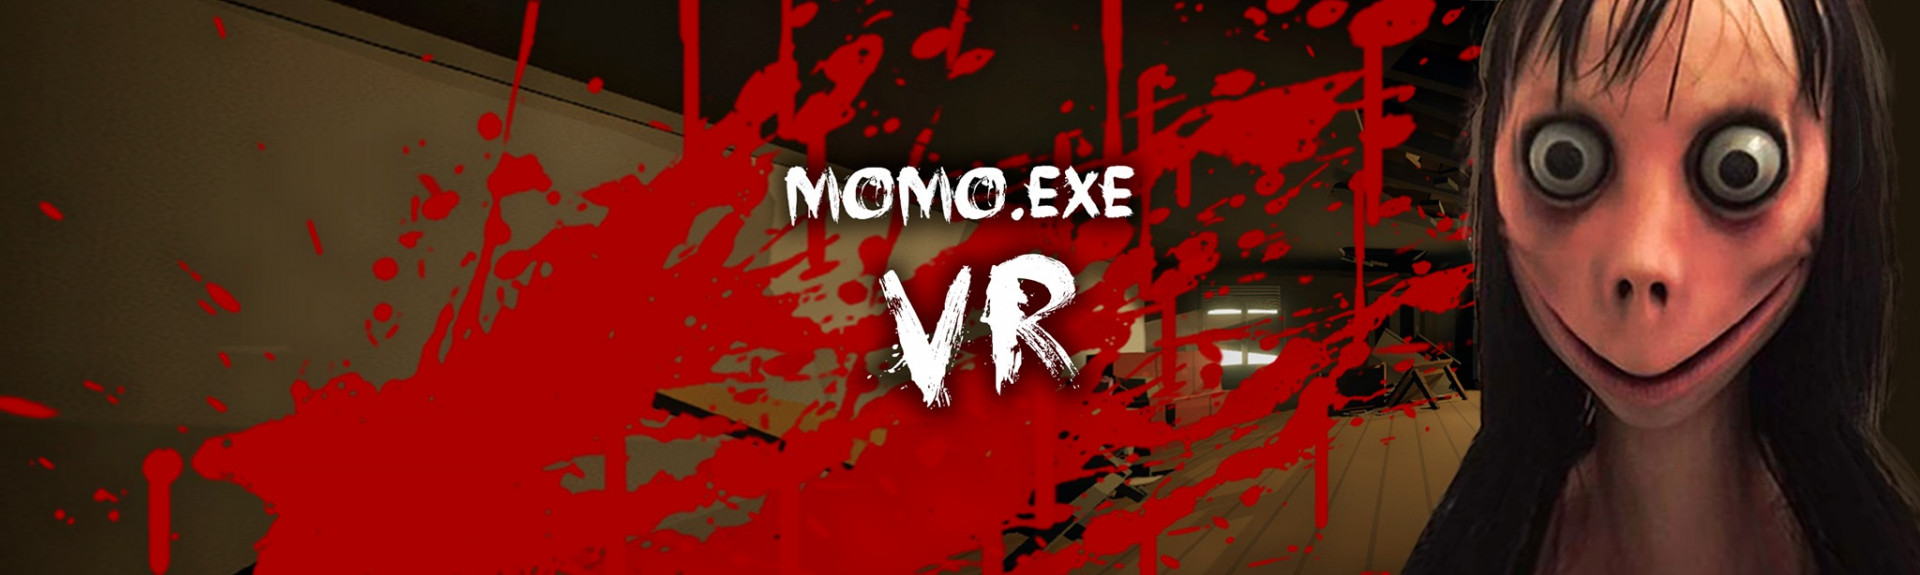 MOMO.EXE VR